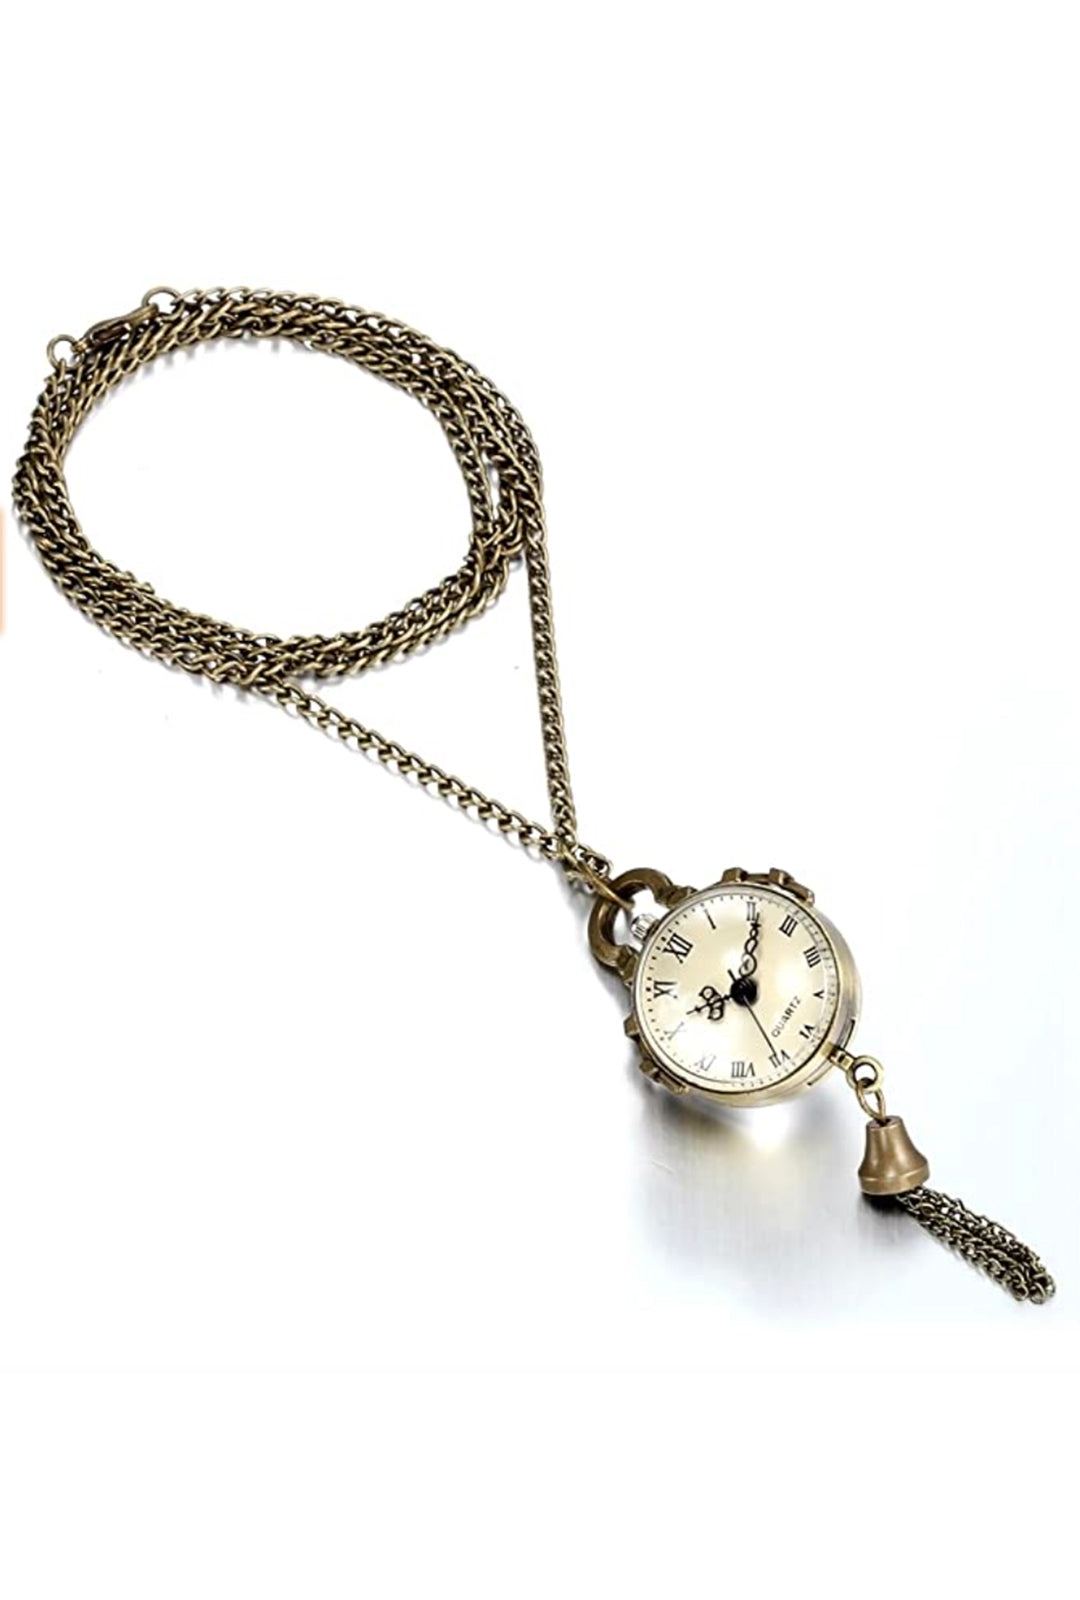 Steampunk Bronze Pocket Watch Necklace (N)